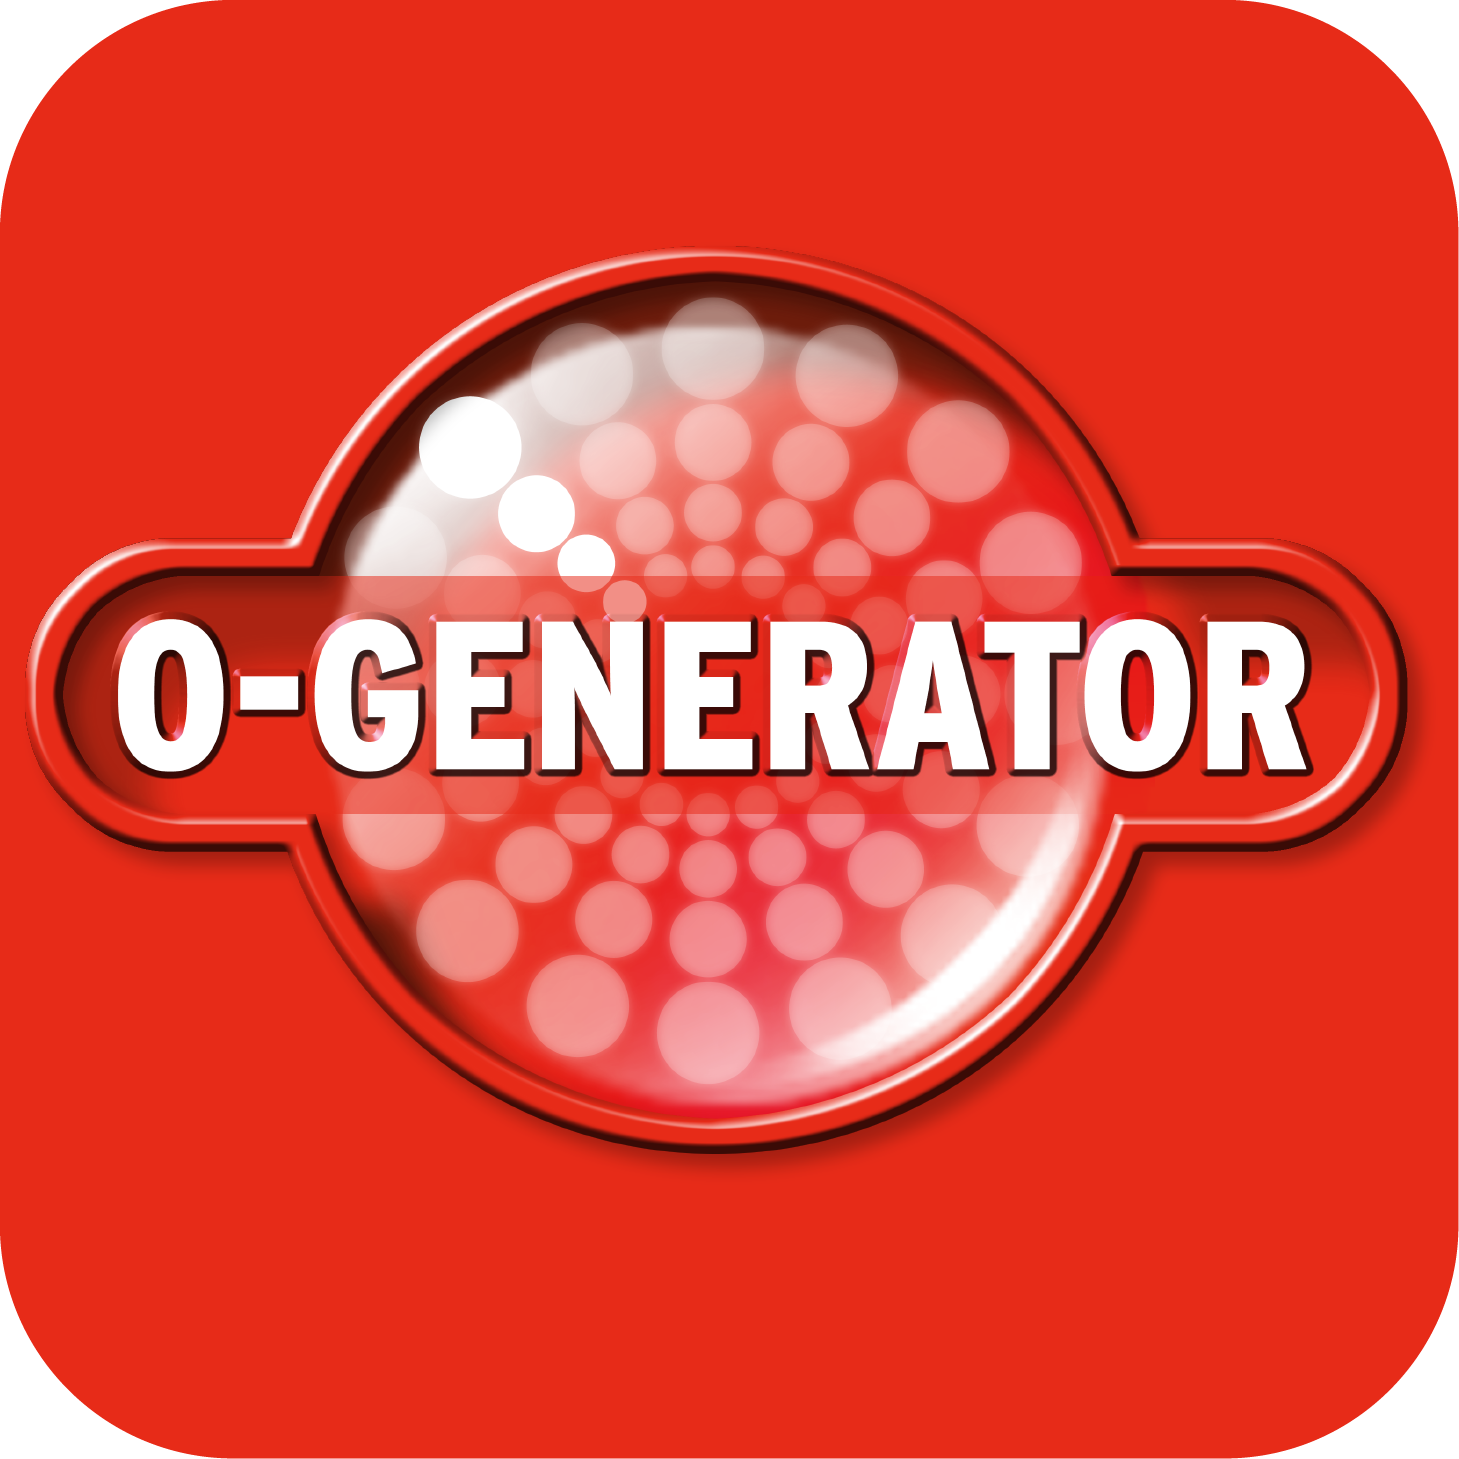 O-Generator